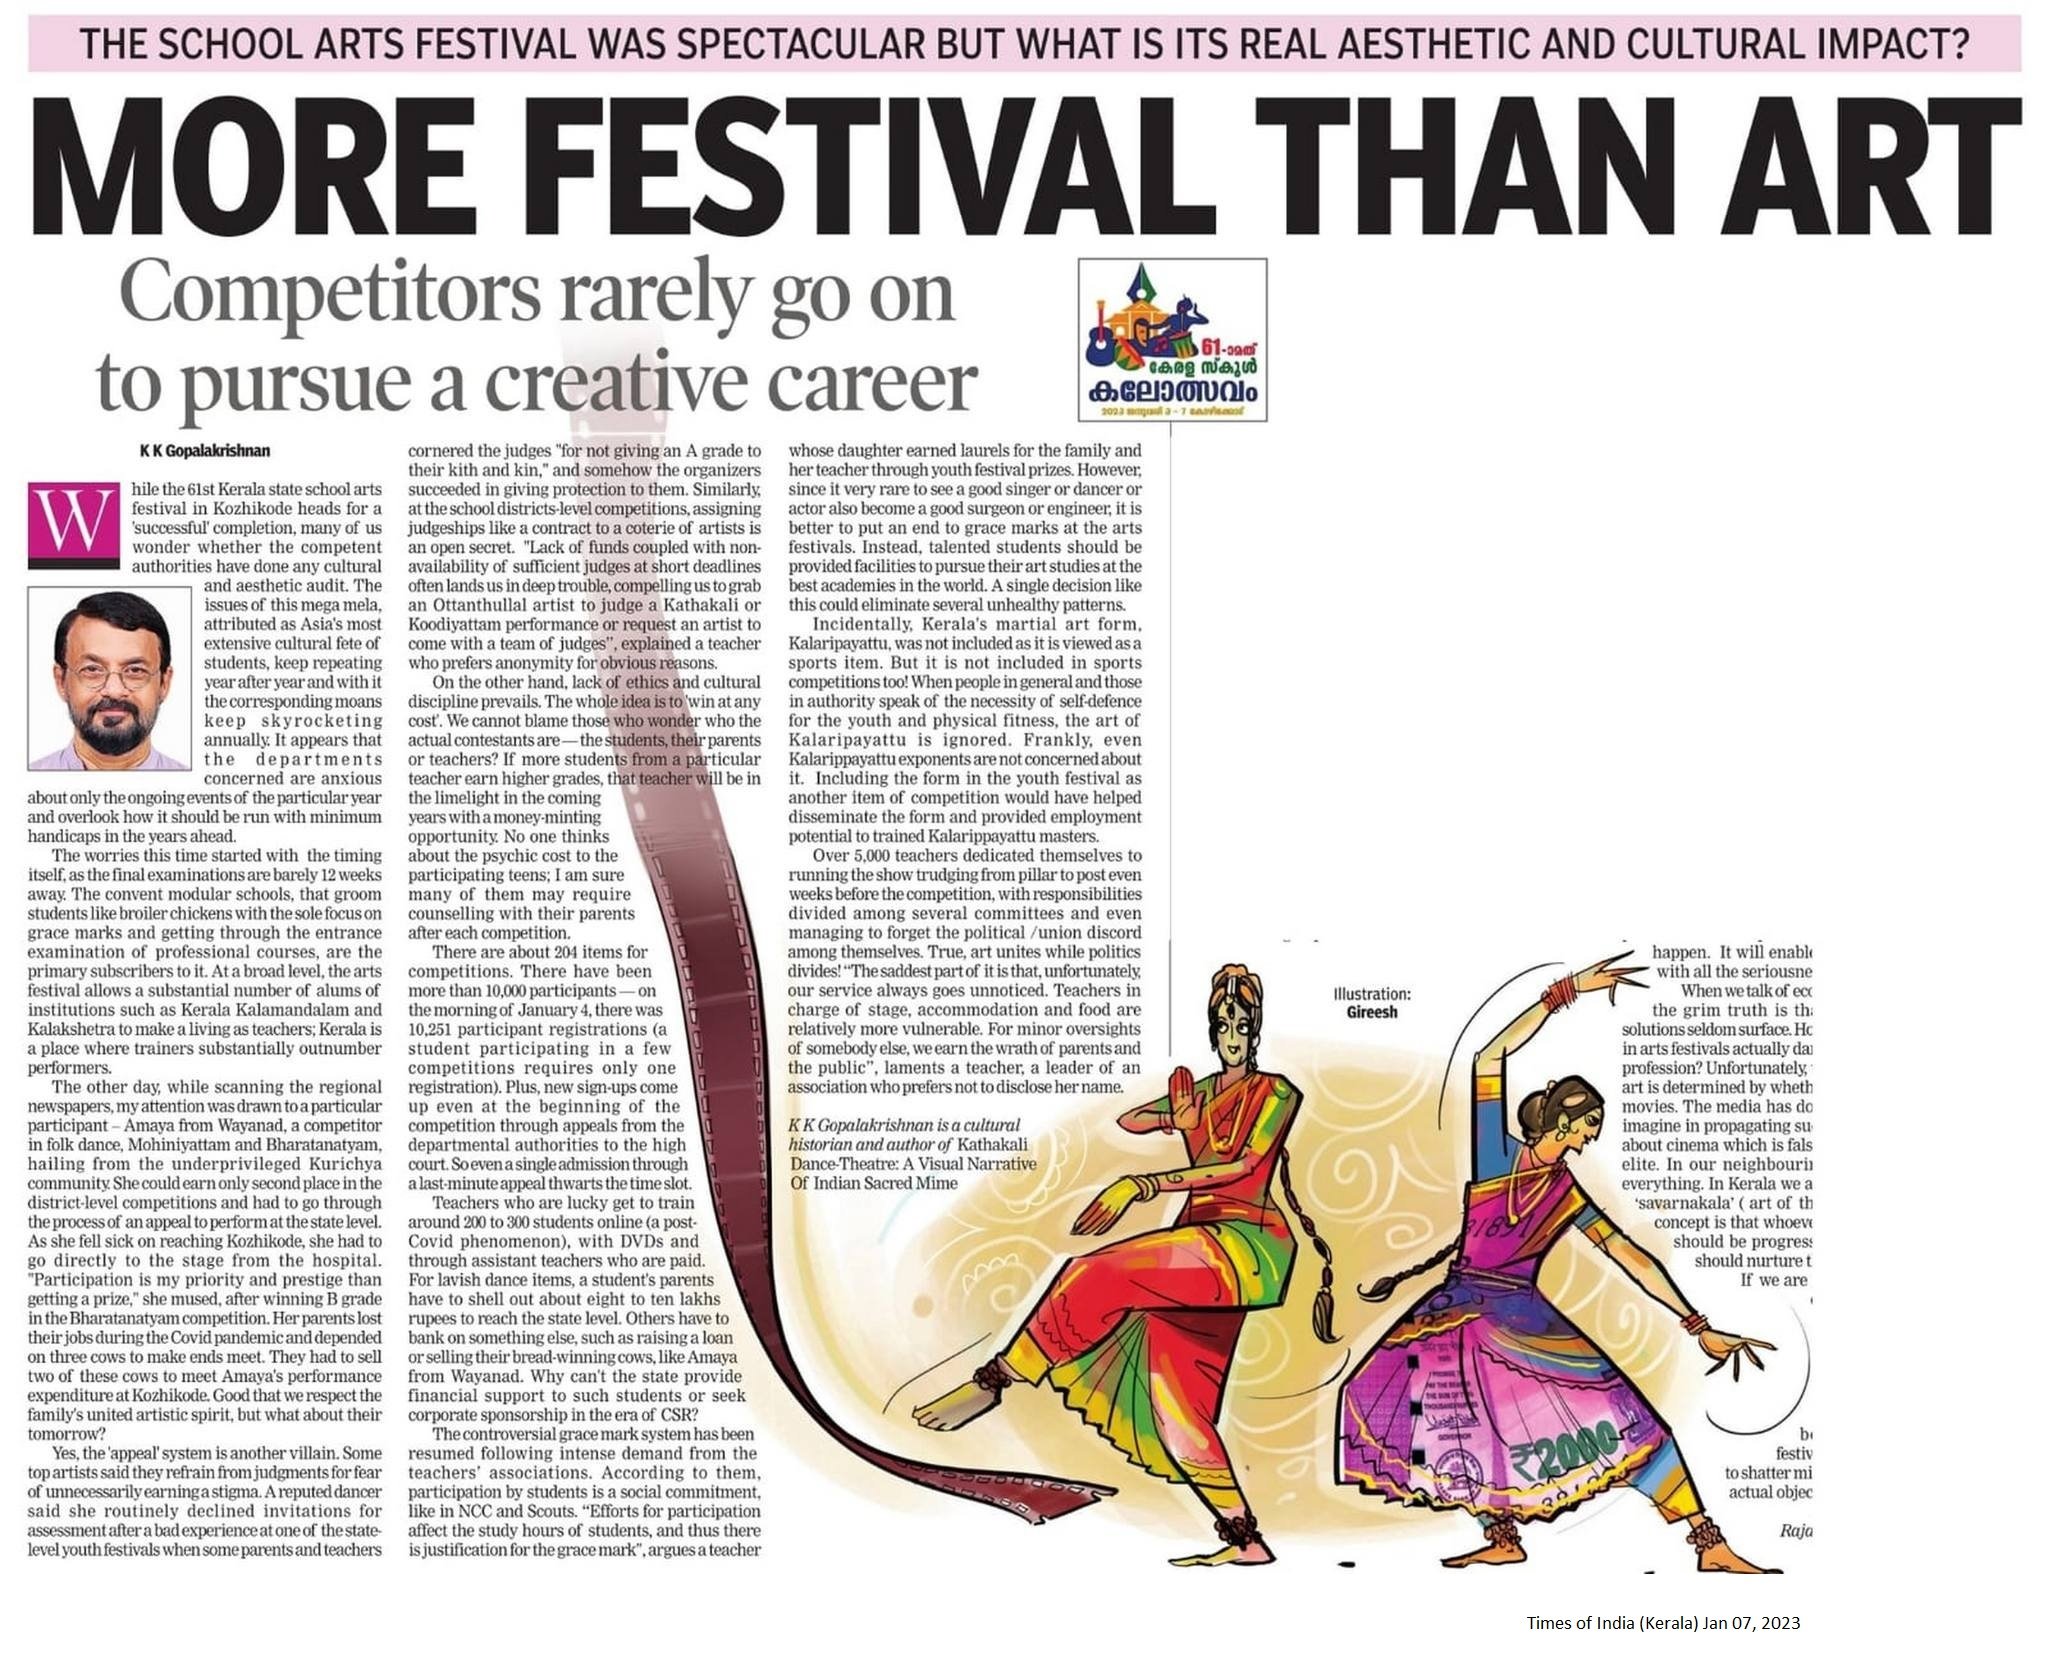 More festival than art - KK Gopalakrishnan